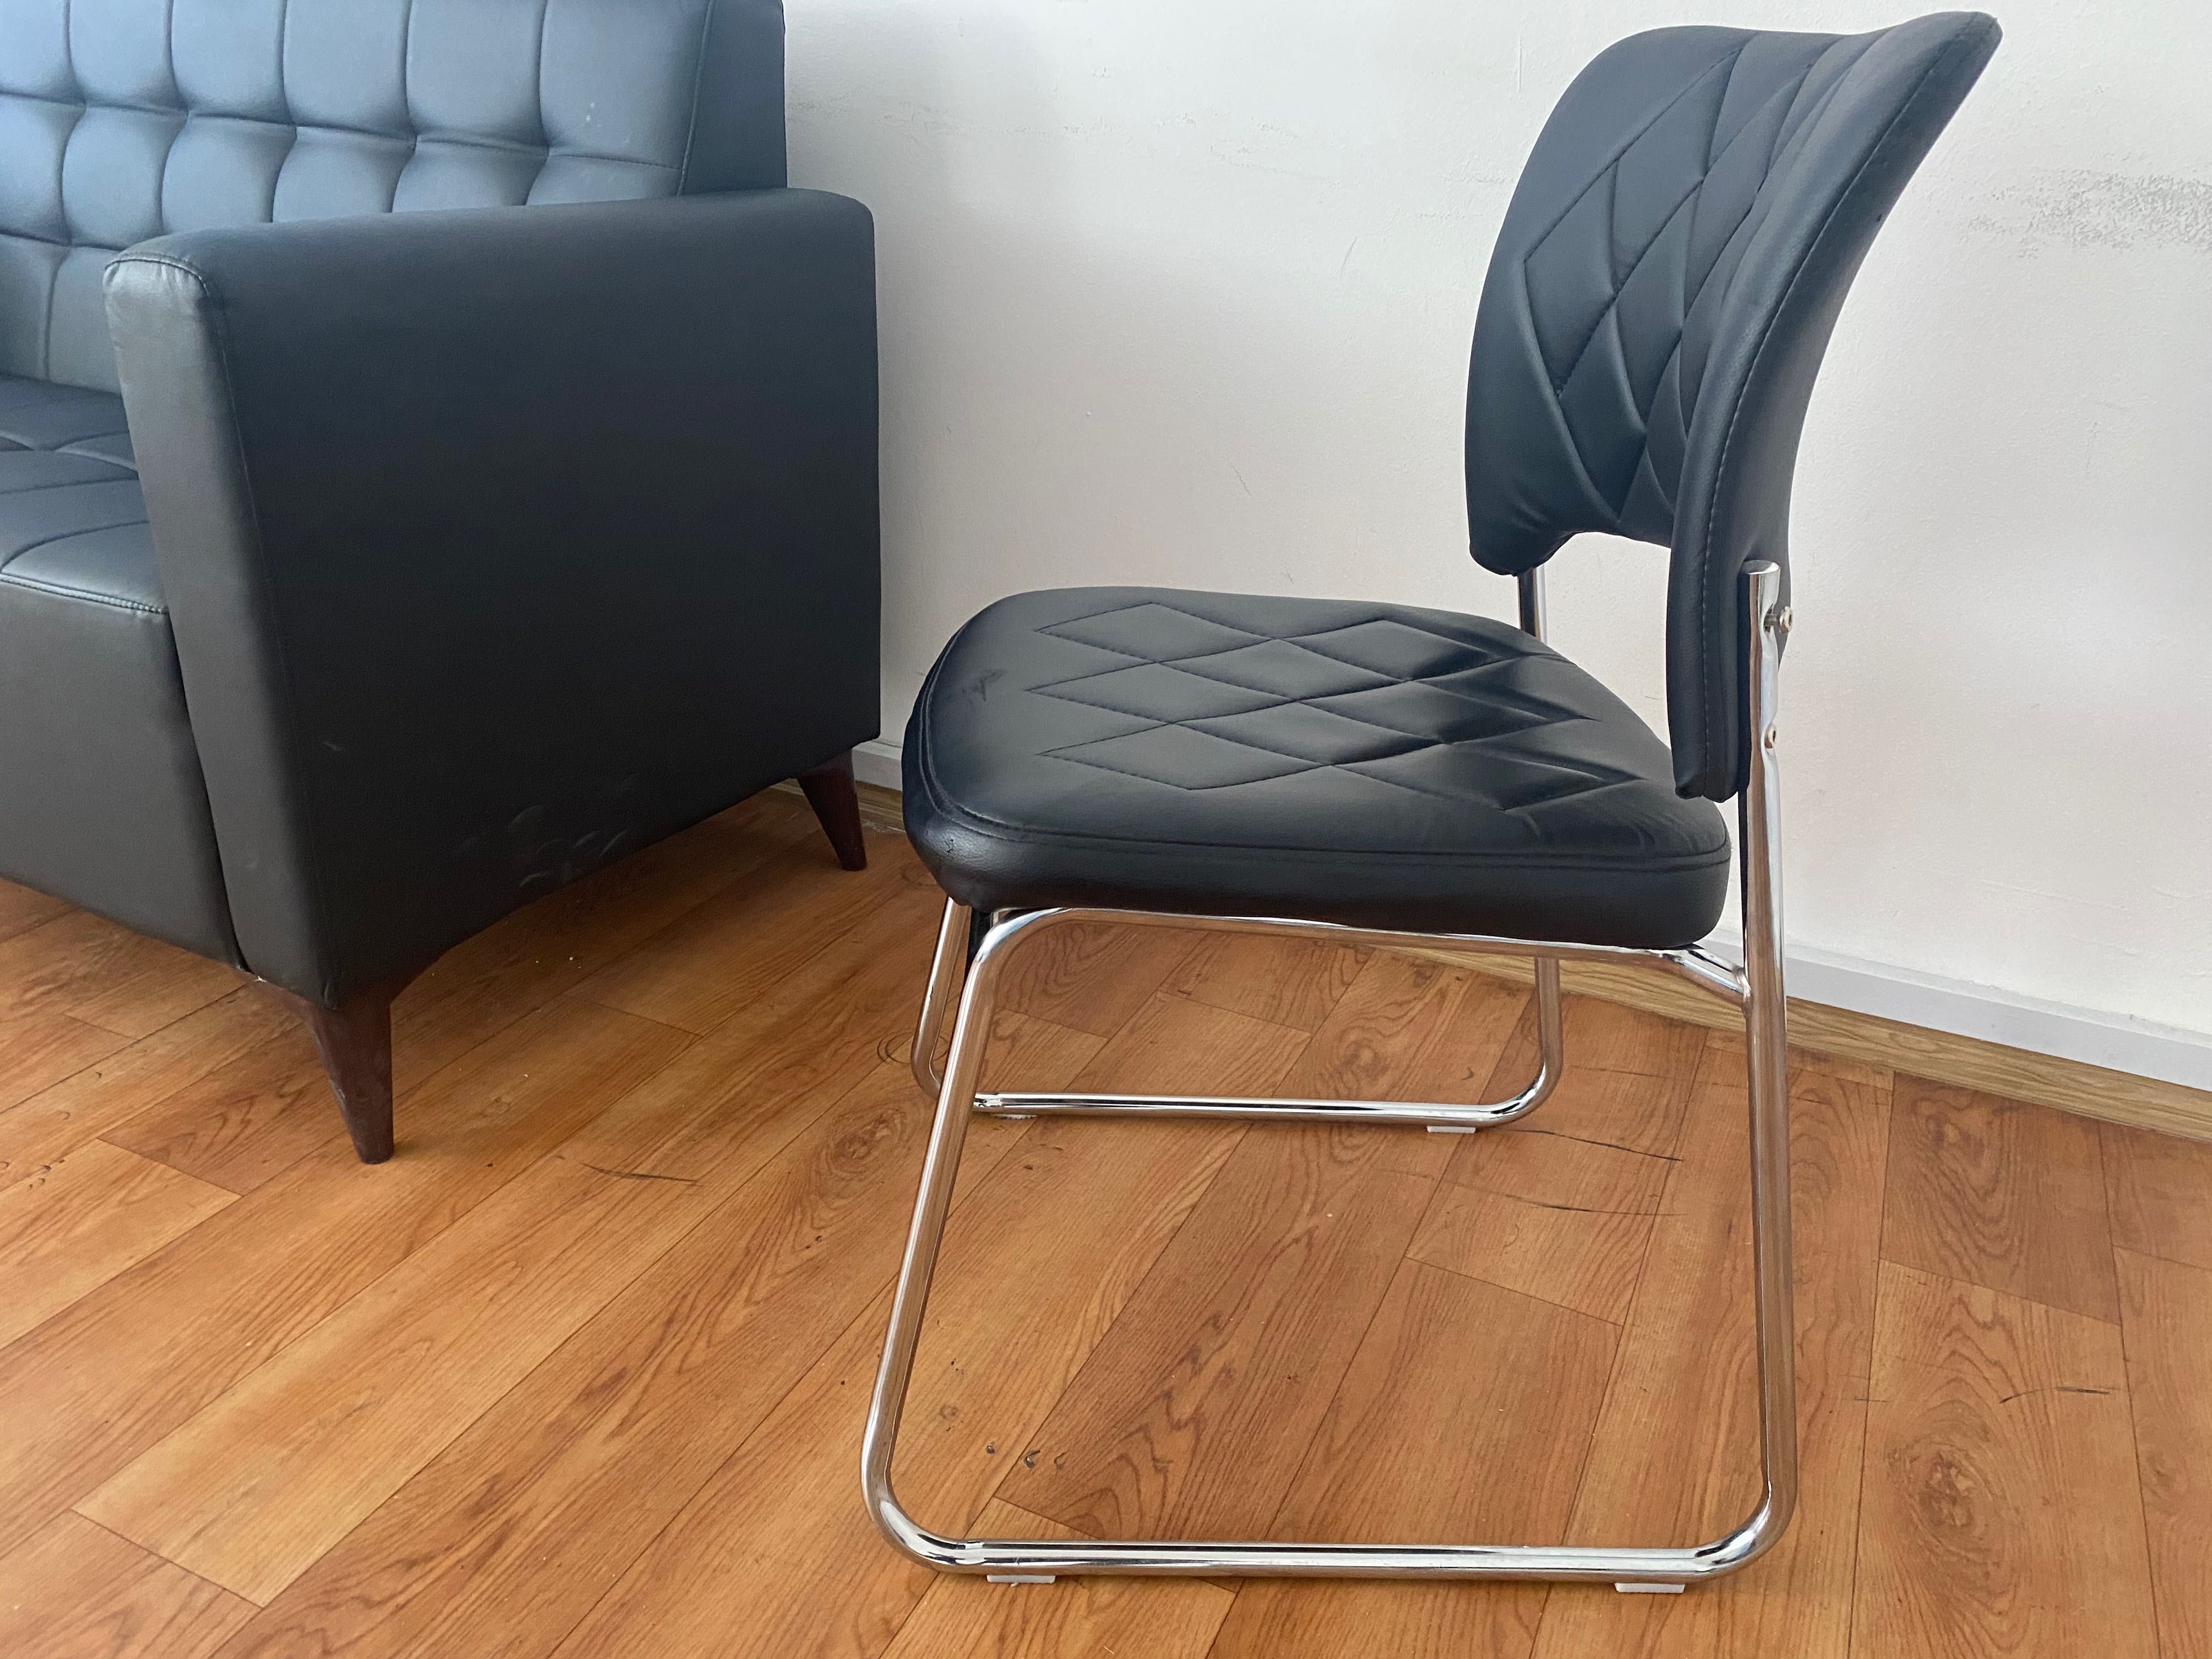 Стул-кресло для офиса или посетителей  (эко-кожа) осталось 2 стула